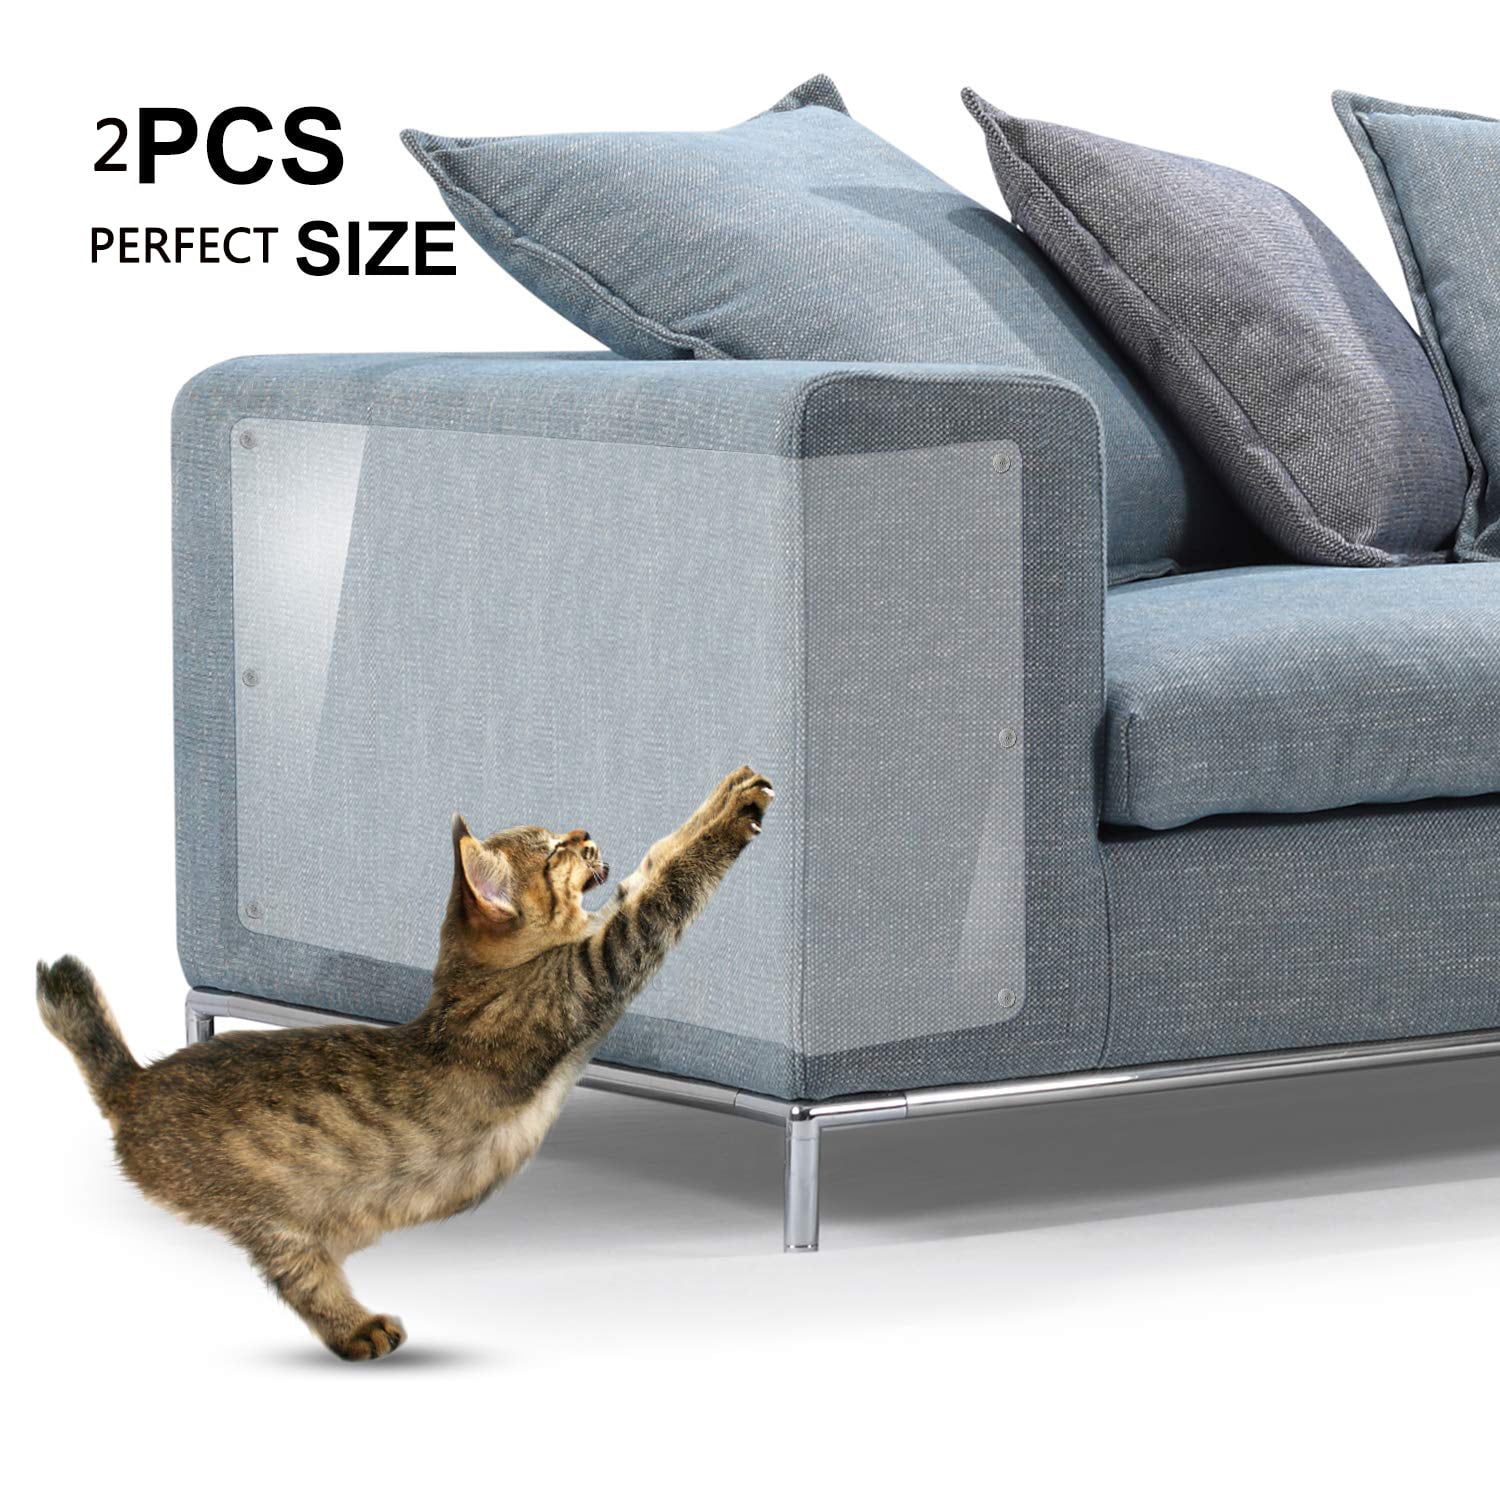 GLiving 2 Pcs Furniture Protectors from Cats, Cat Scratch Deterrent